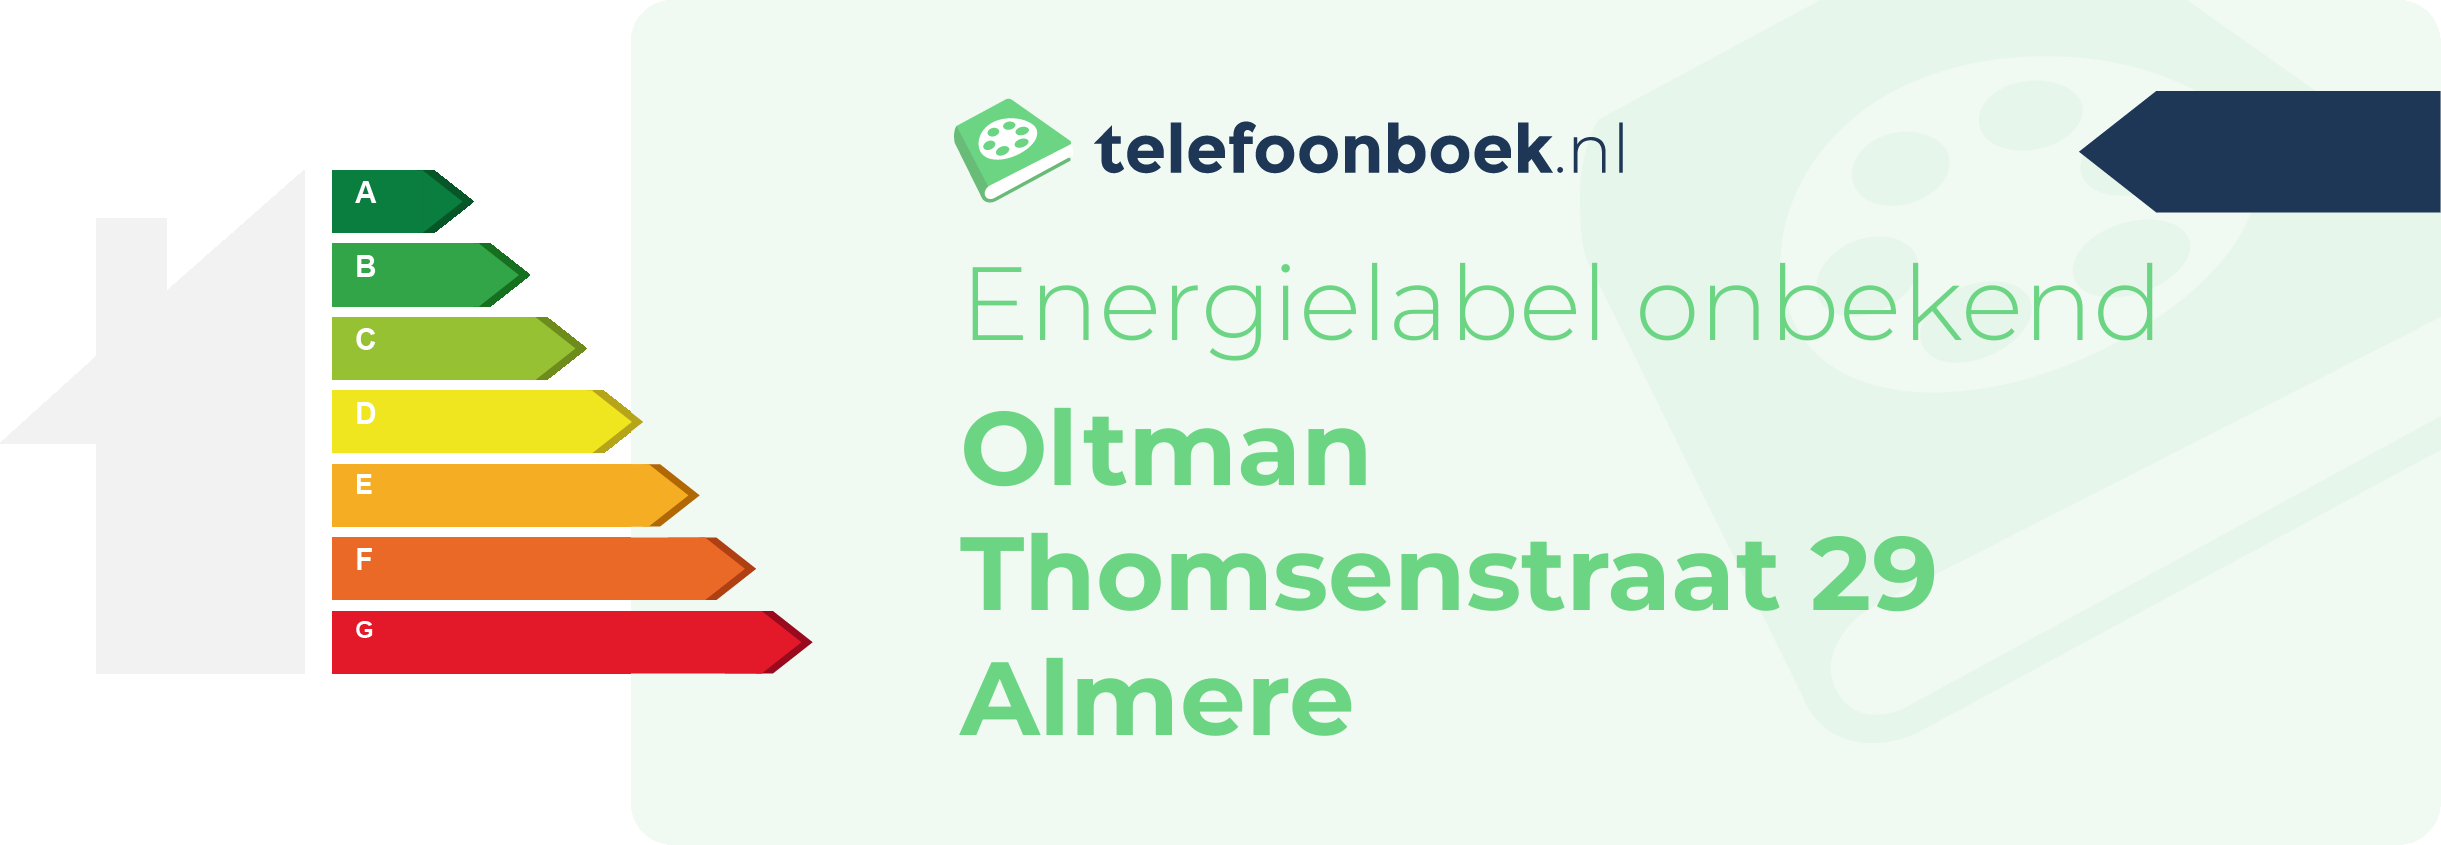 Energielabel Oltman Thomsenstraat 29 Almere